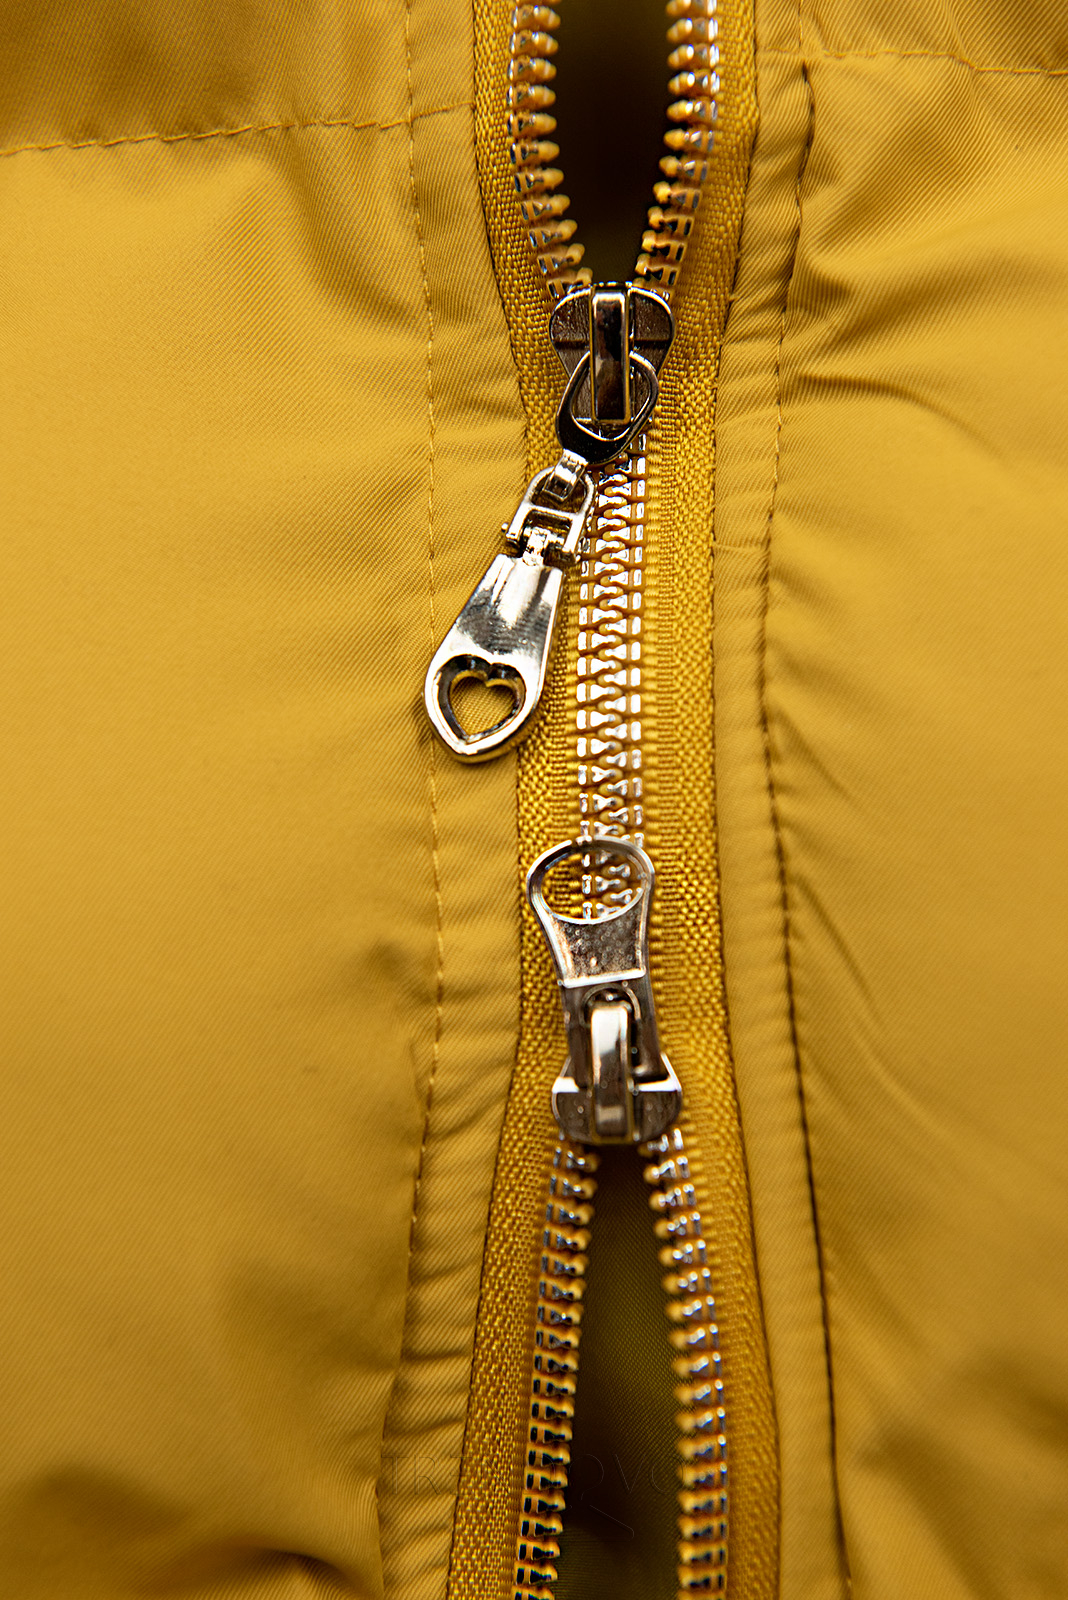 Žlutá prošívaná vesta s kapucí